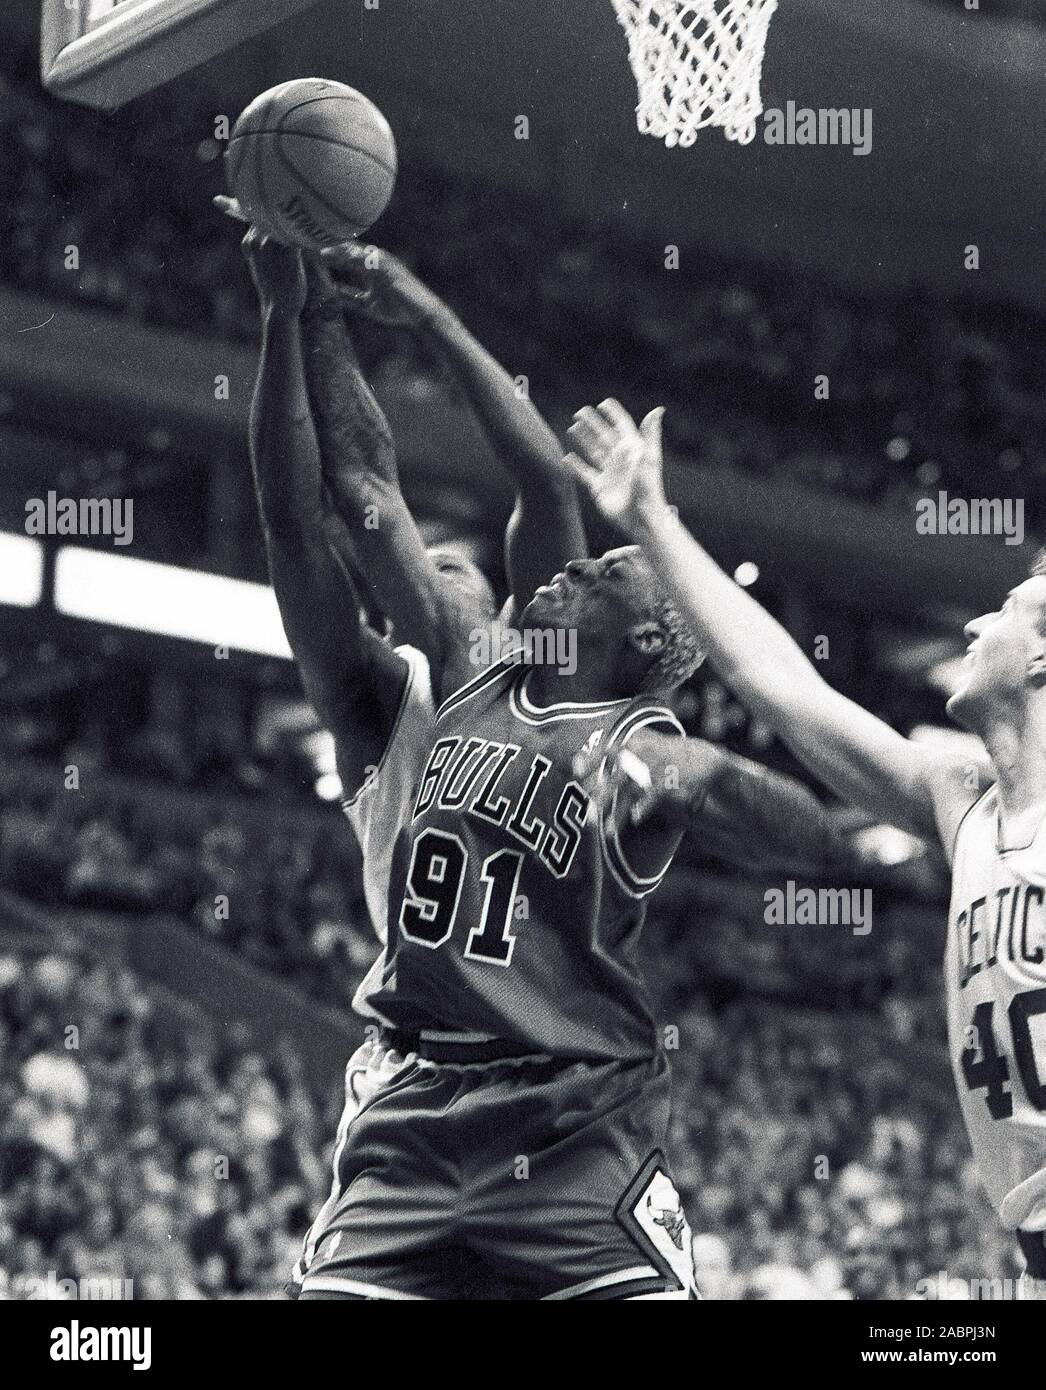 Chicago Bulls Dennis Rodman streifen die Kugel weg von Boston Celtics Antoine Walker, Celtics #40 Travis Ritter (rechts) während der Basketball spiel action im Fleet Center in Boston, Ma USA 1997-1998 Saison Foto von Bill belknap Stockfoto